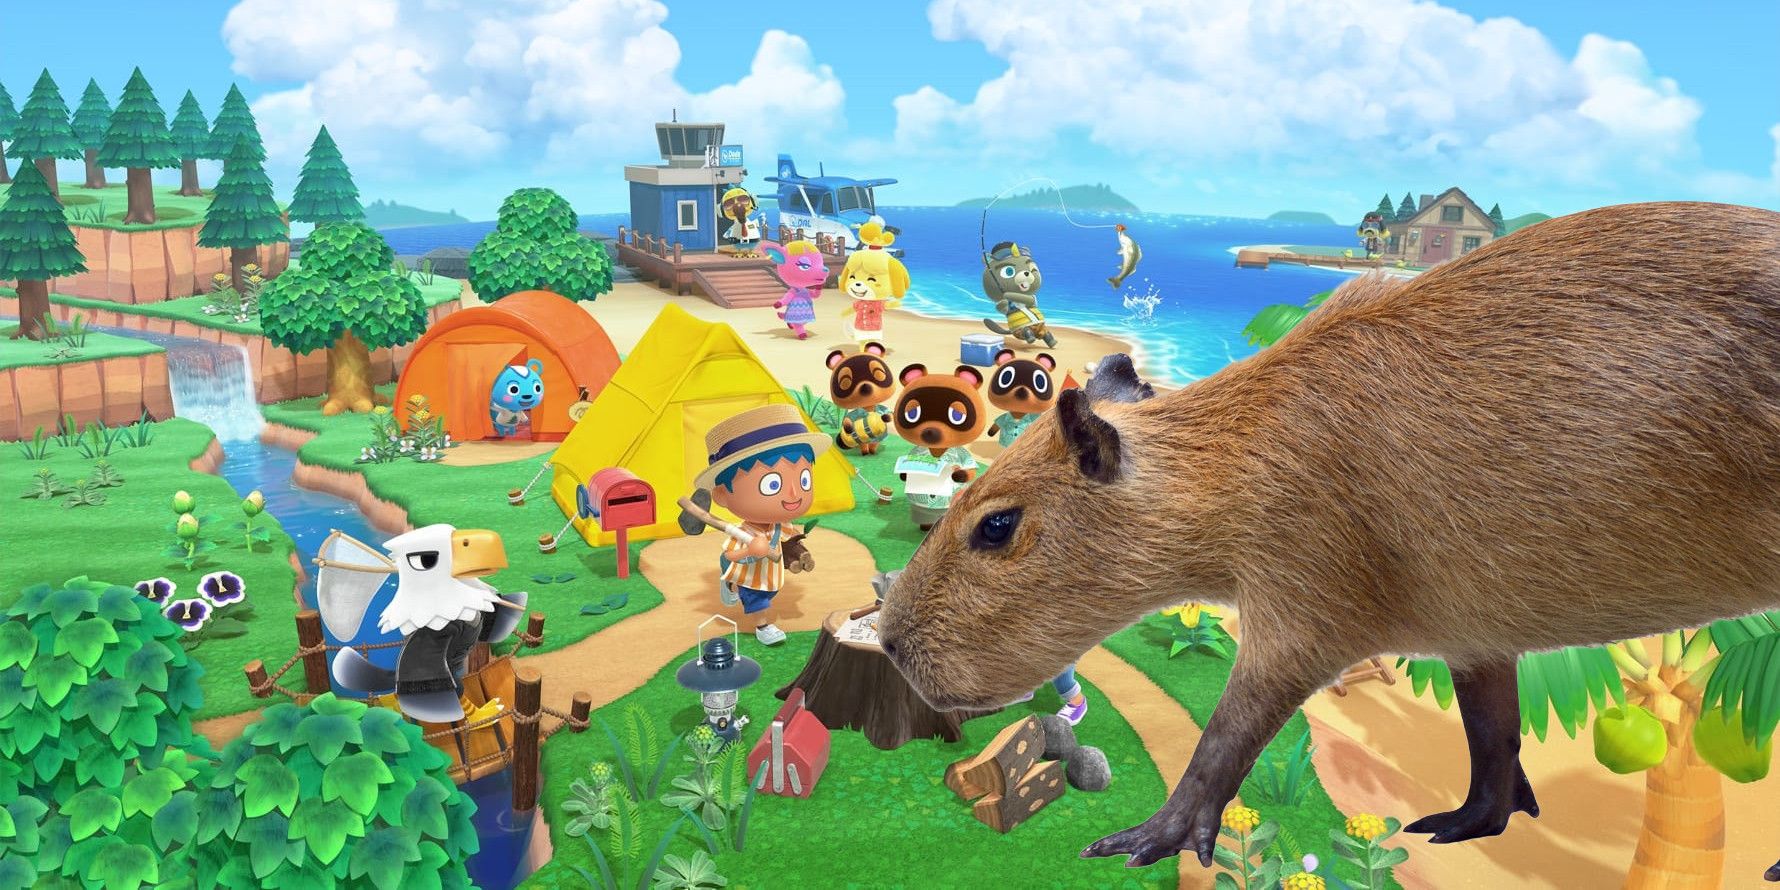 El jugador de ACNH diseña aldeanos inspirados en los capibaras porque el juego no tiene ninguno